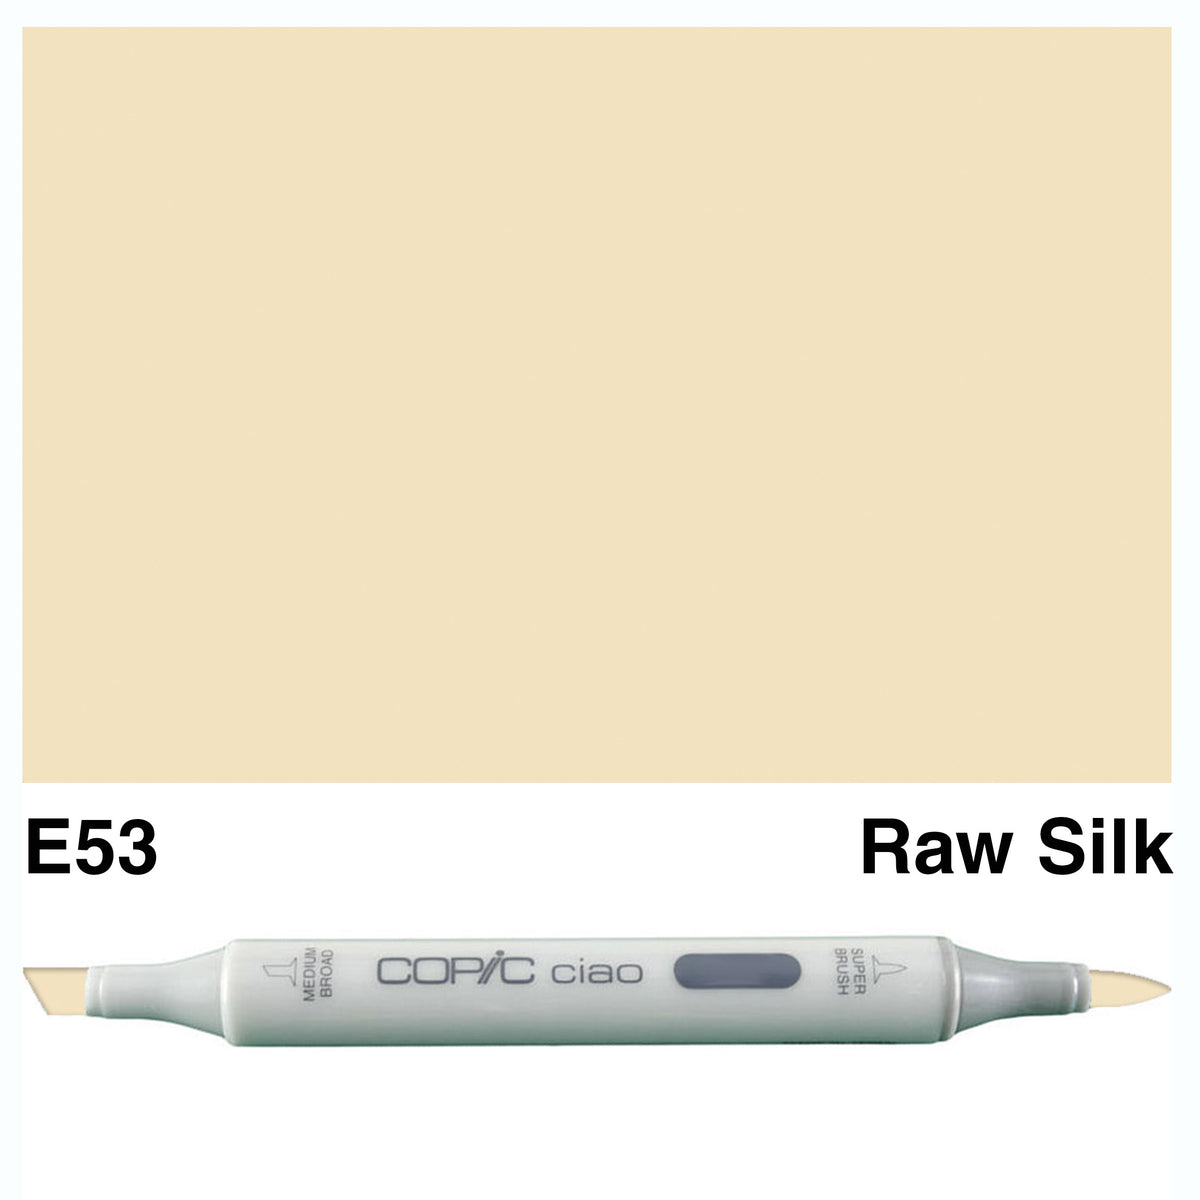 Copic Ciao E53-Raw Silk